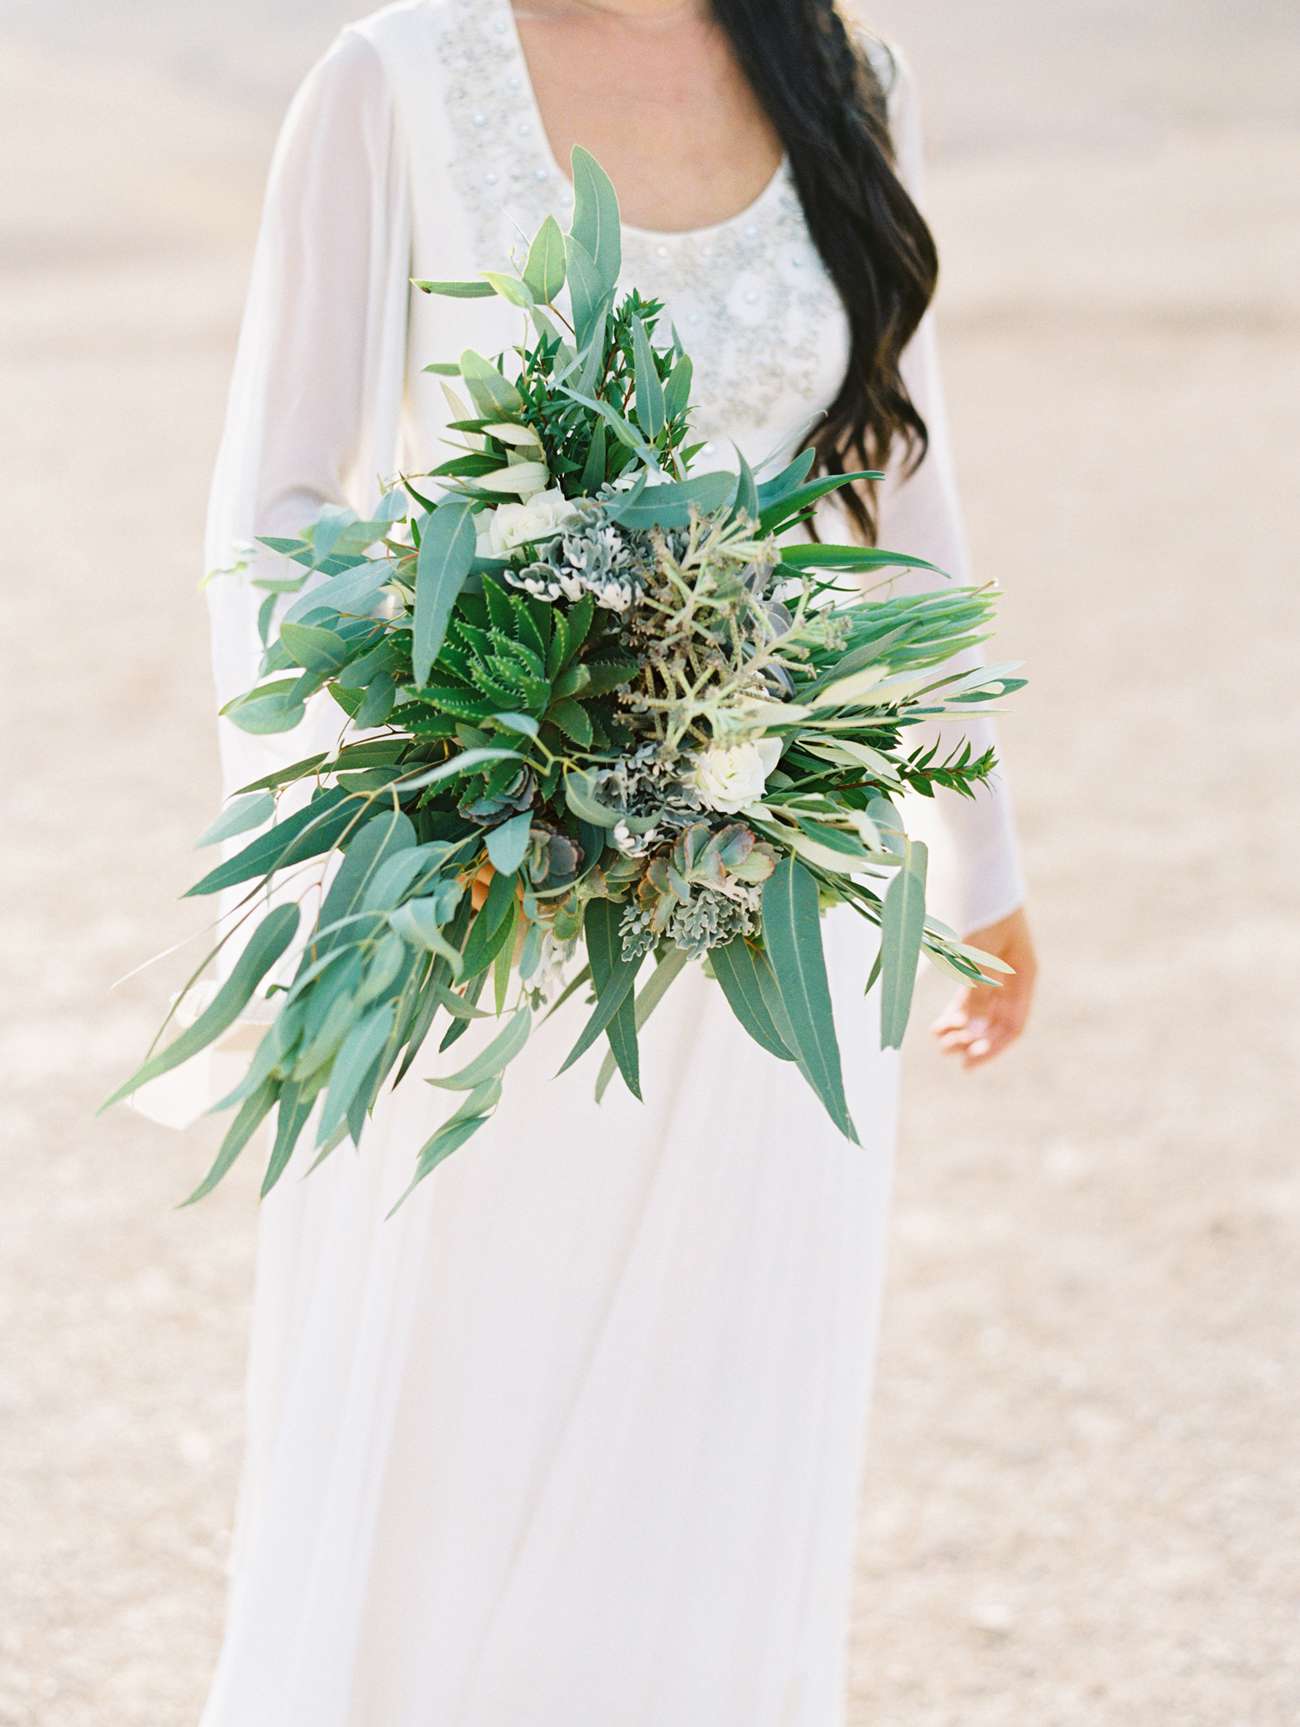 A Lush, Green Bridal Bouquet